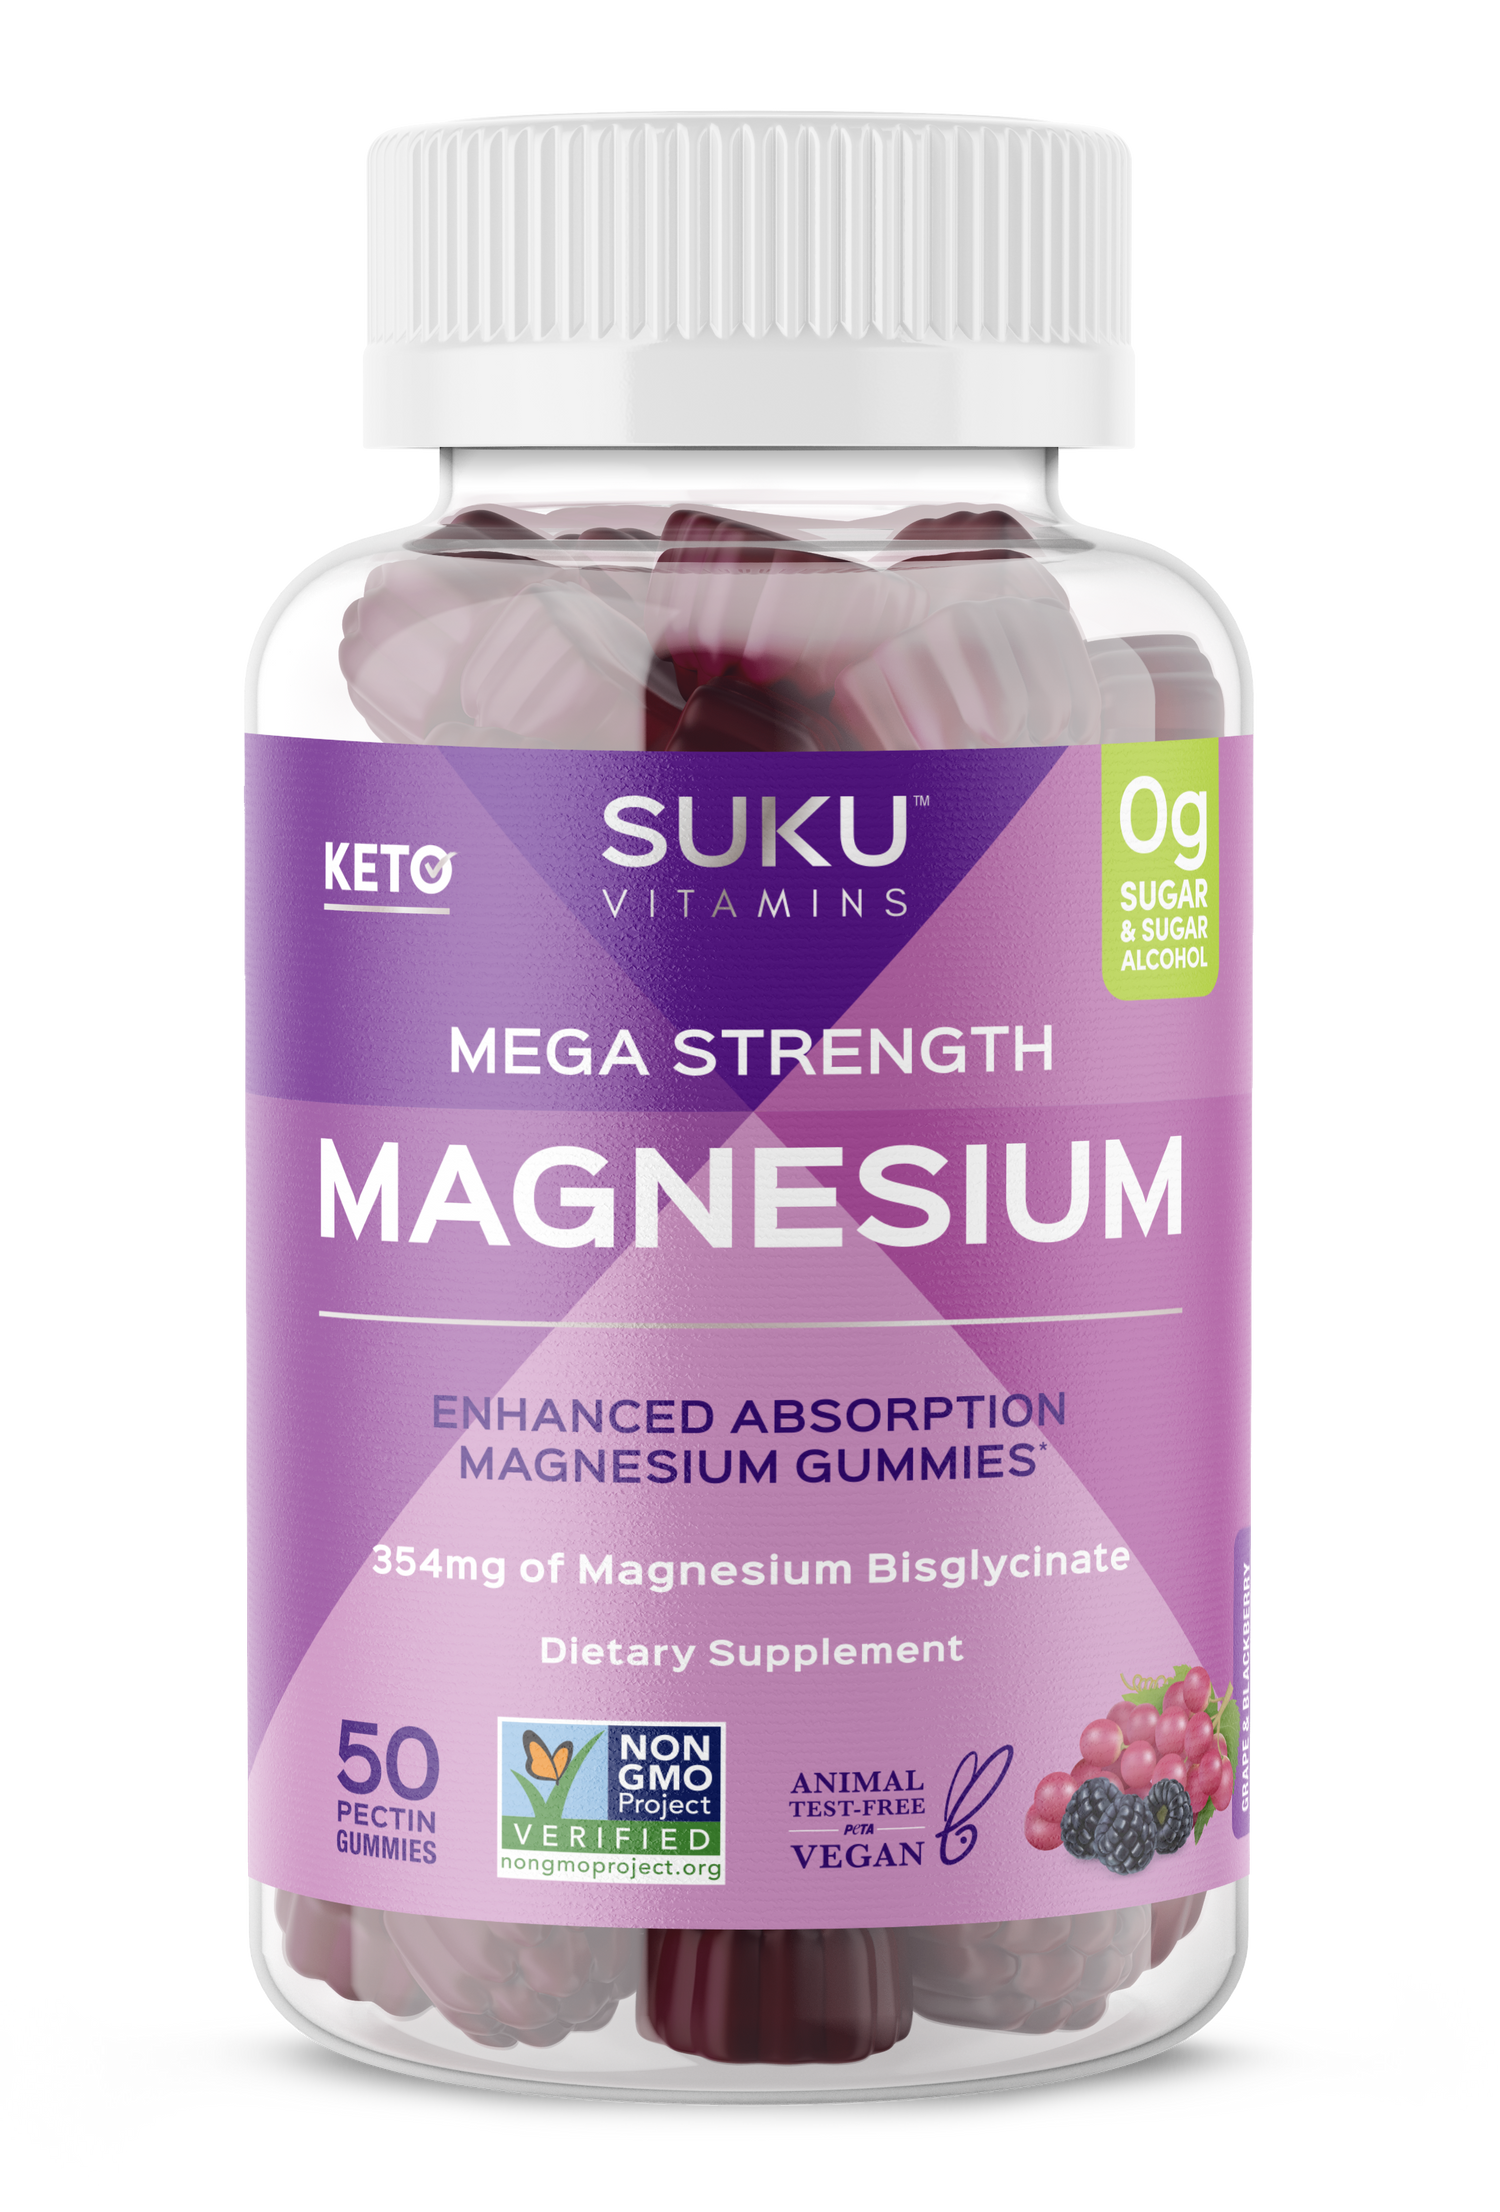 Mega Magnesium